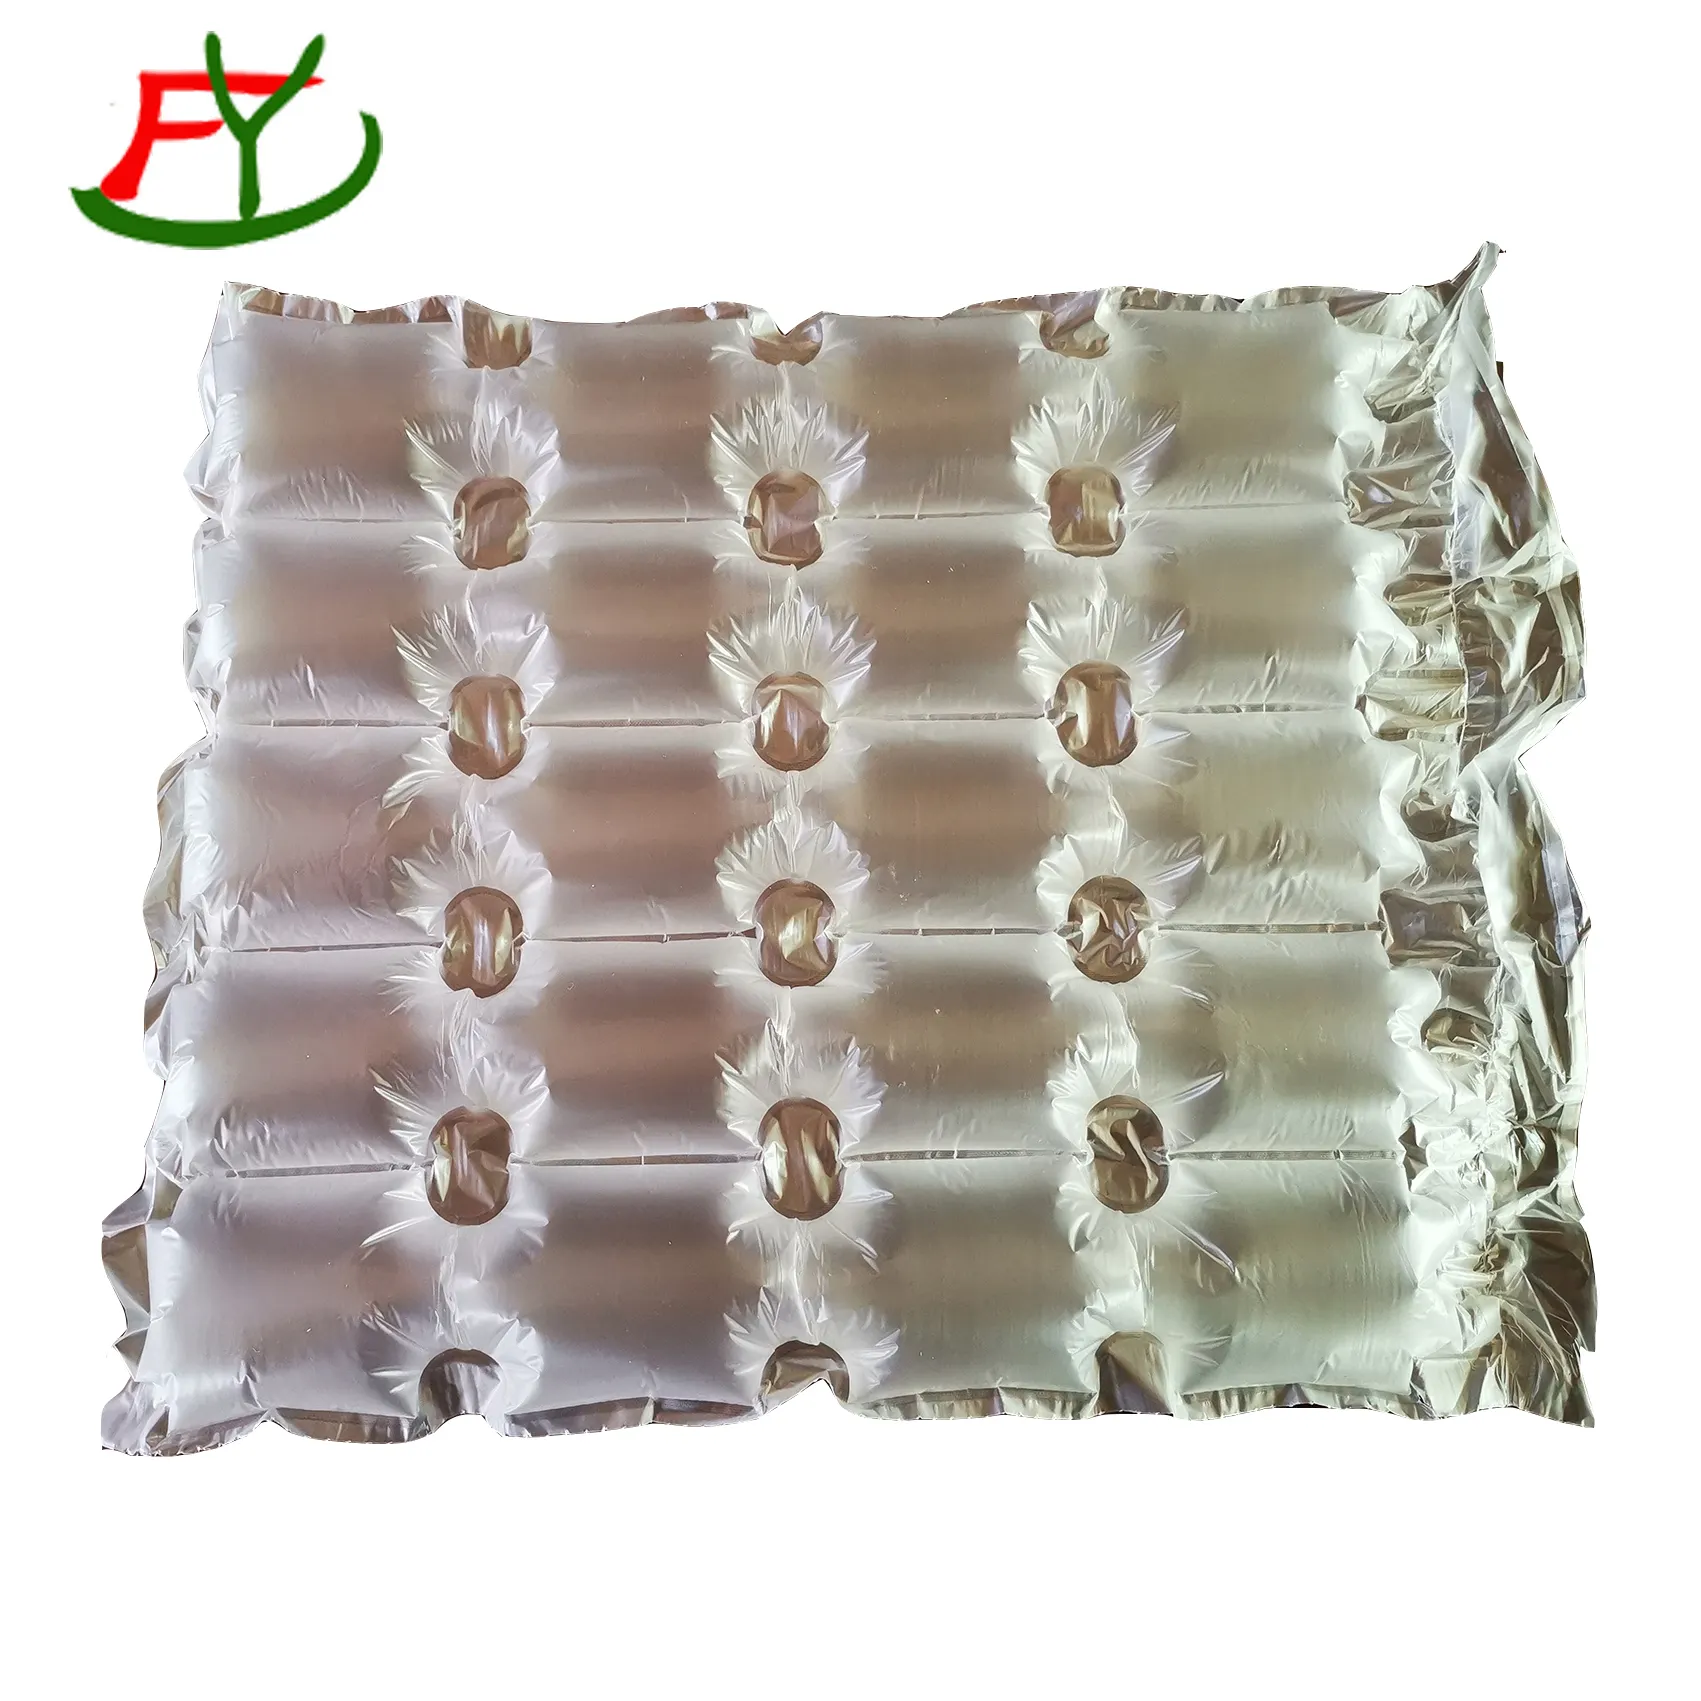 Рулоны упаковочной пленки на воздушной подушке: упаковочный материал, который экономит ваши деньги на возврате и замене